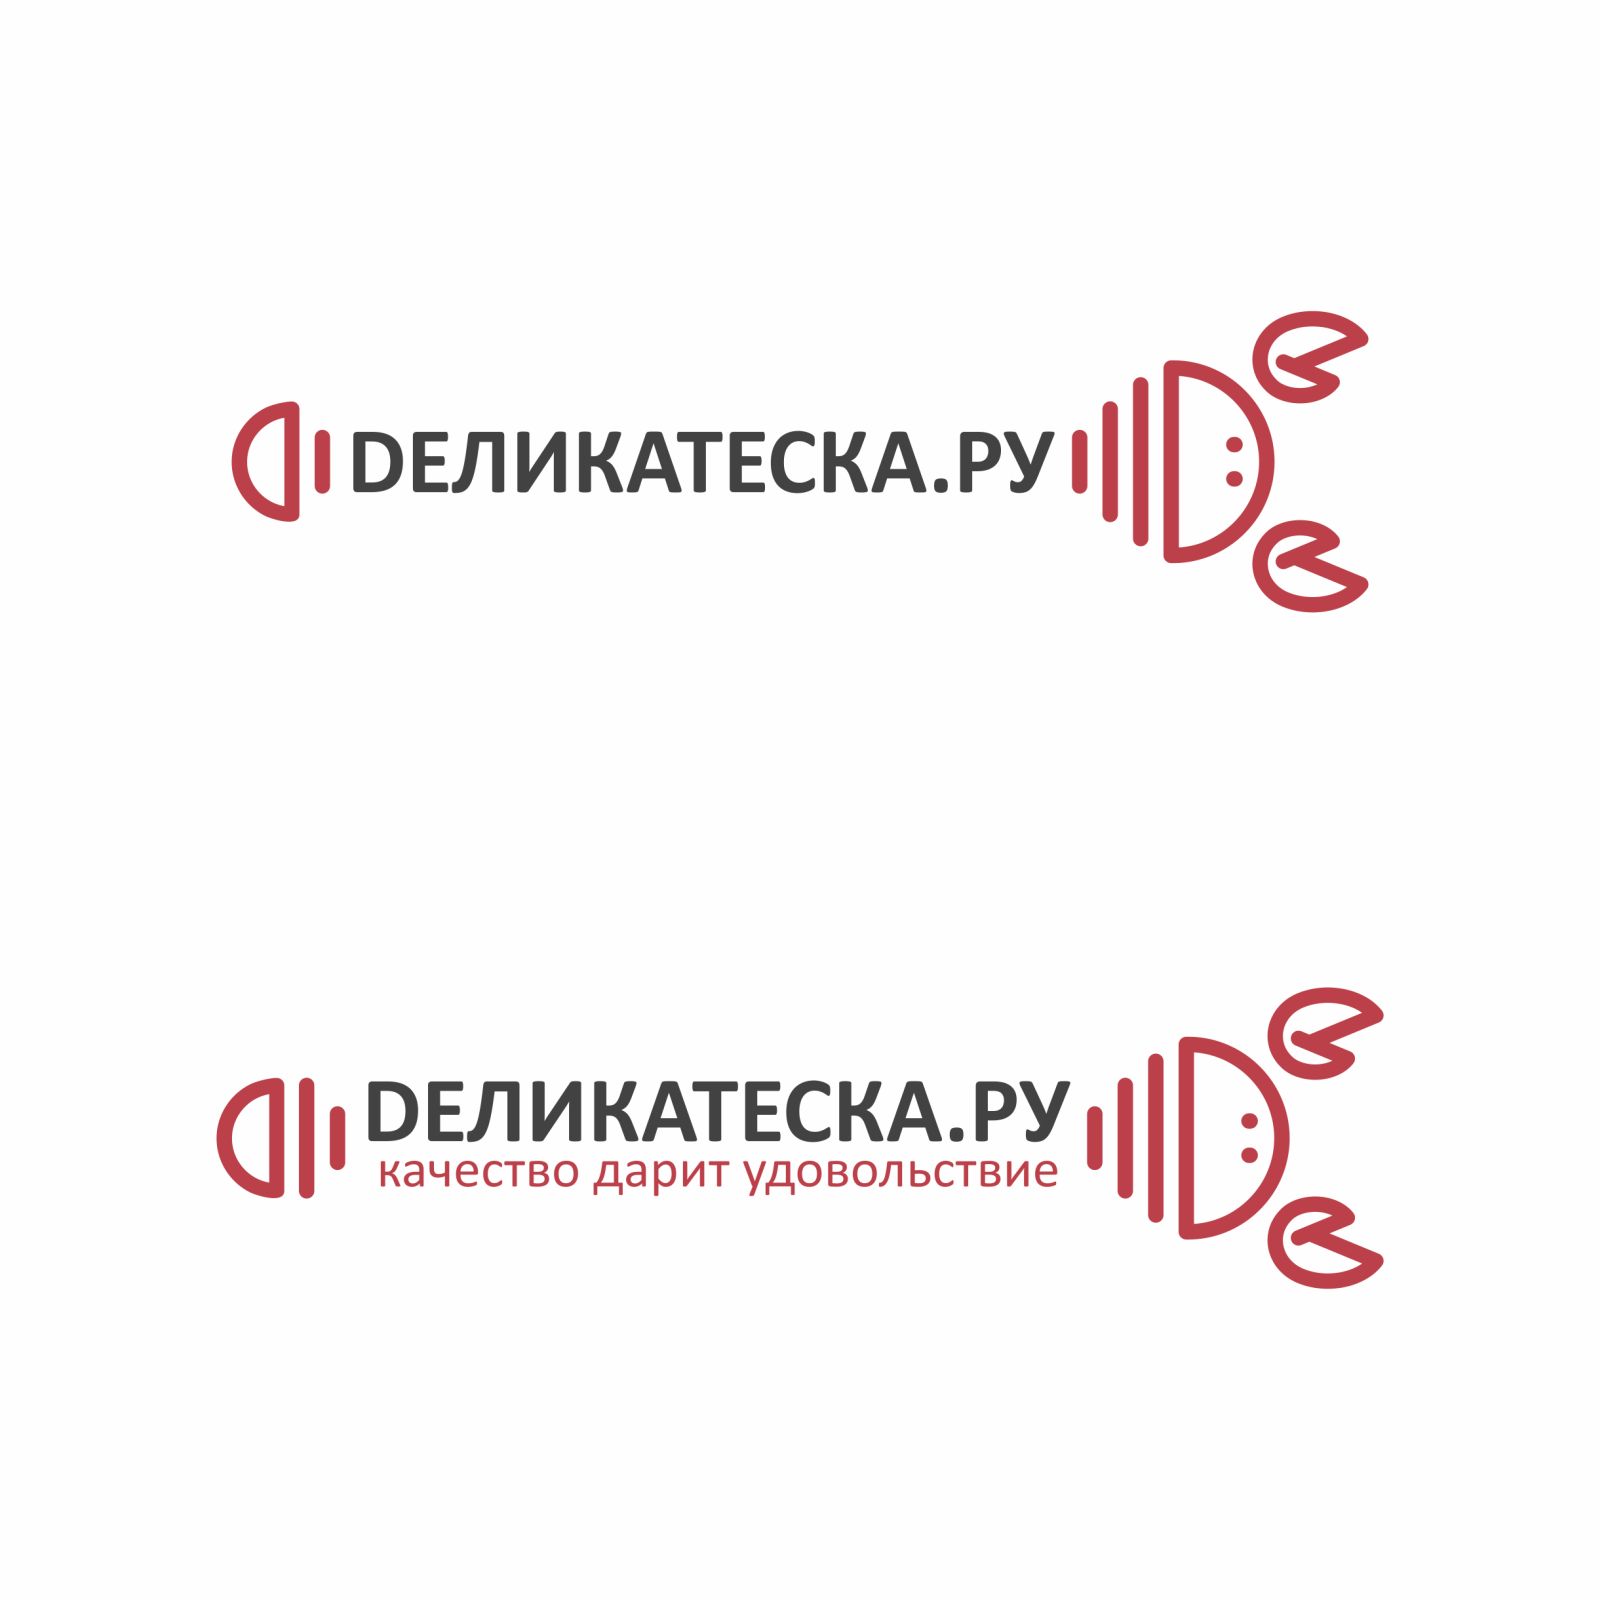 Логотип для ДЕЛИКАТЕСКА.РУ - дизайнер Vladlena_D